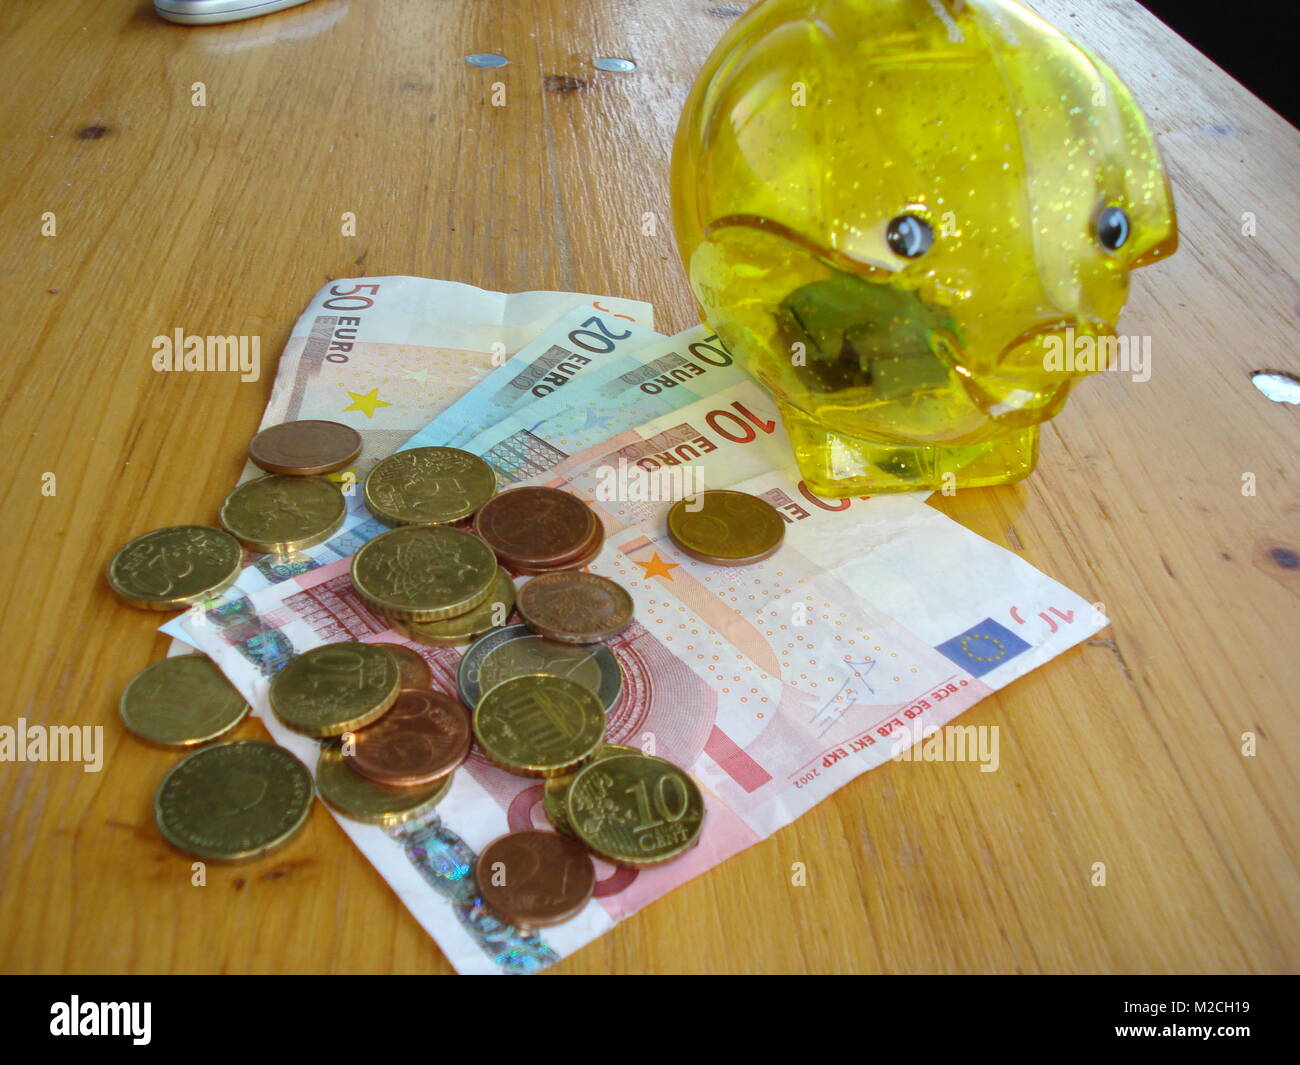 Zum 1. Juli 2013 gehört Kroatien /Croatia zur Europäischen Union (EU). Dann löst der Euro die bisherige eigene Landeswährung Kuna ab. Stock Photo